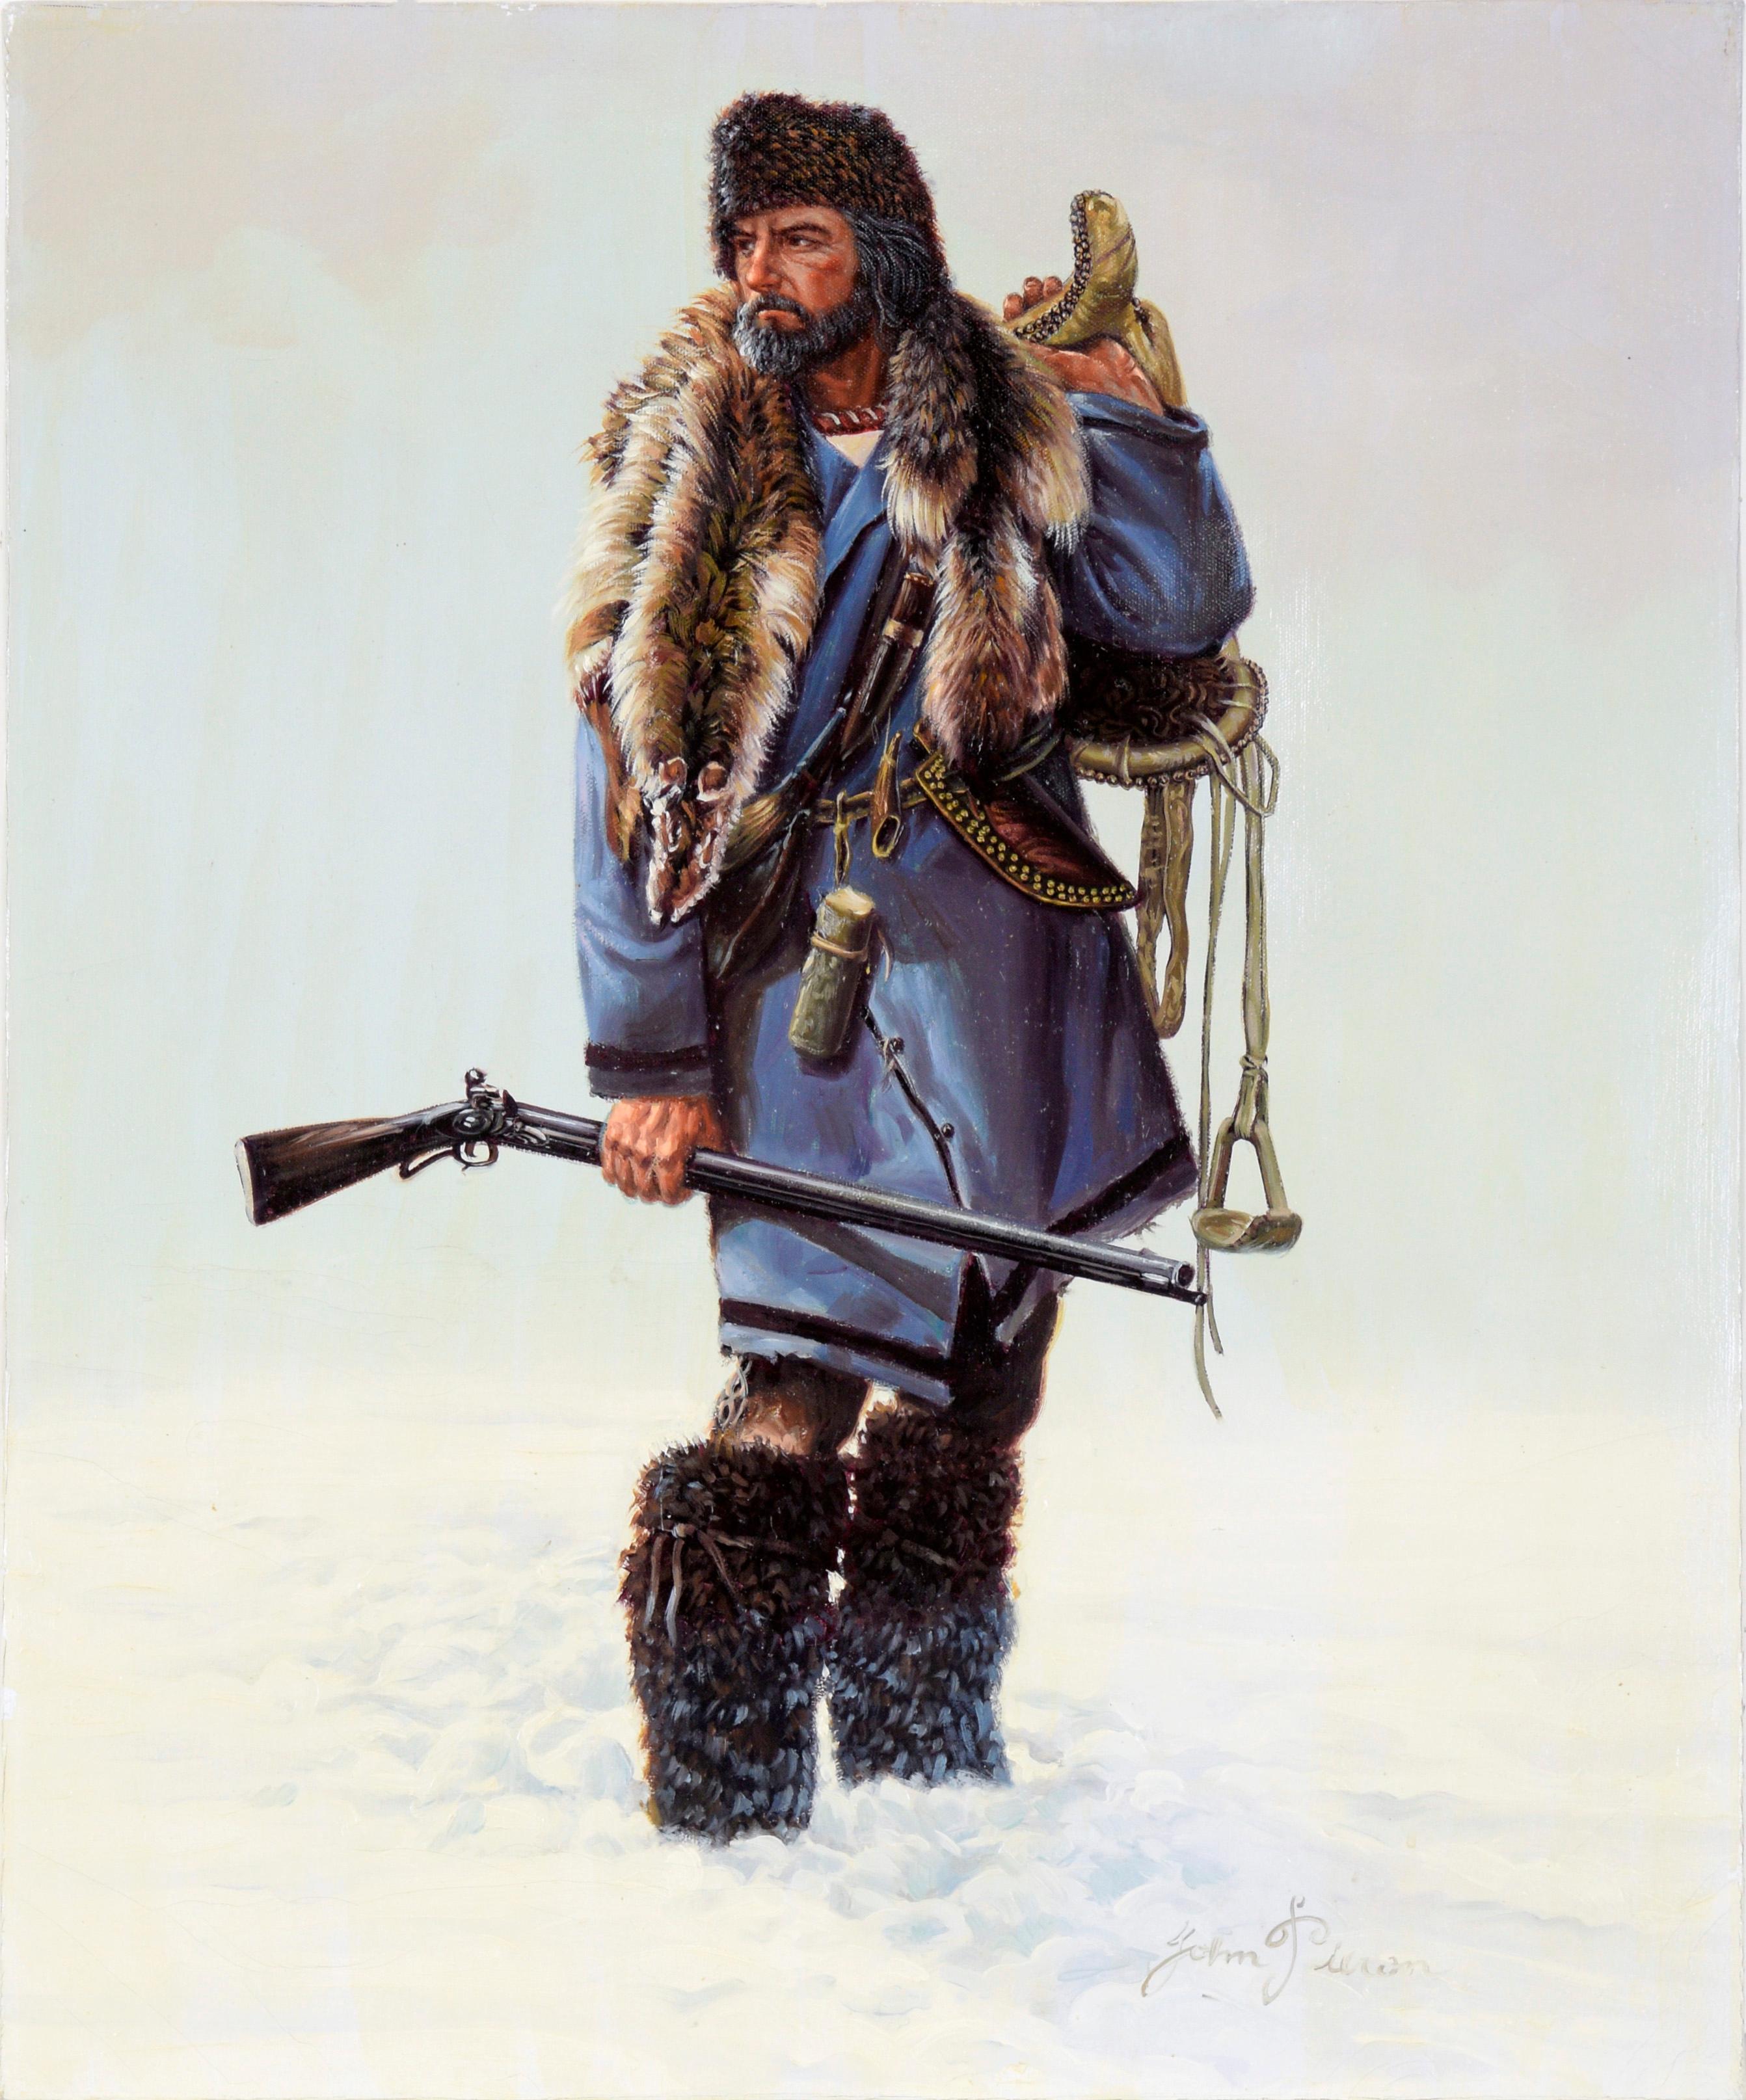 Trappeur en hiver - Portrait à l'huile sur toile